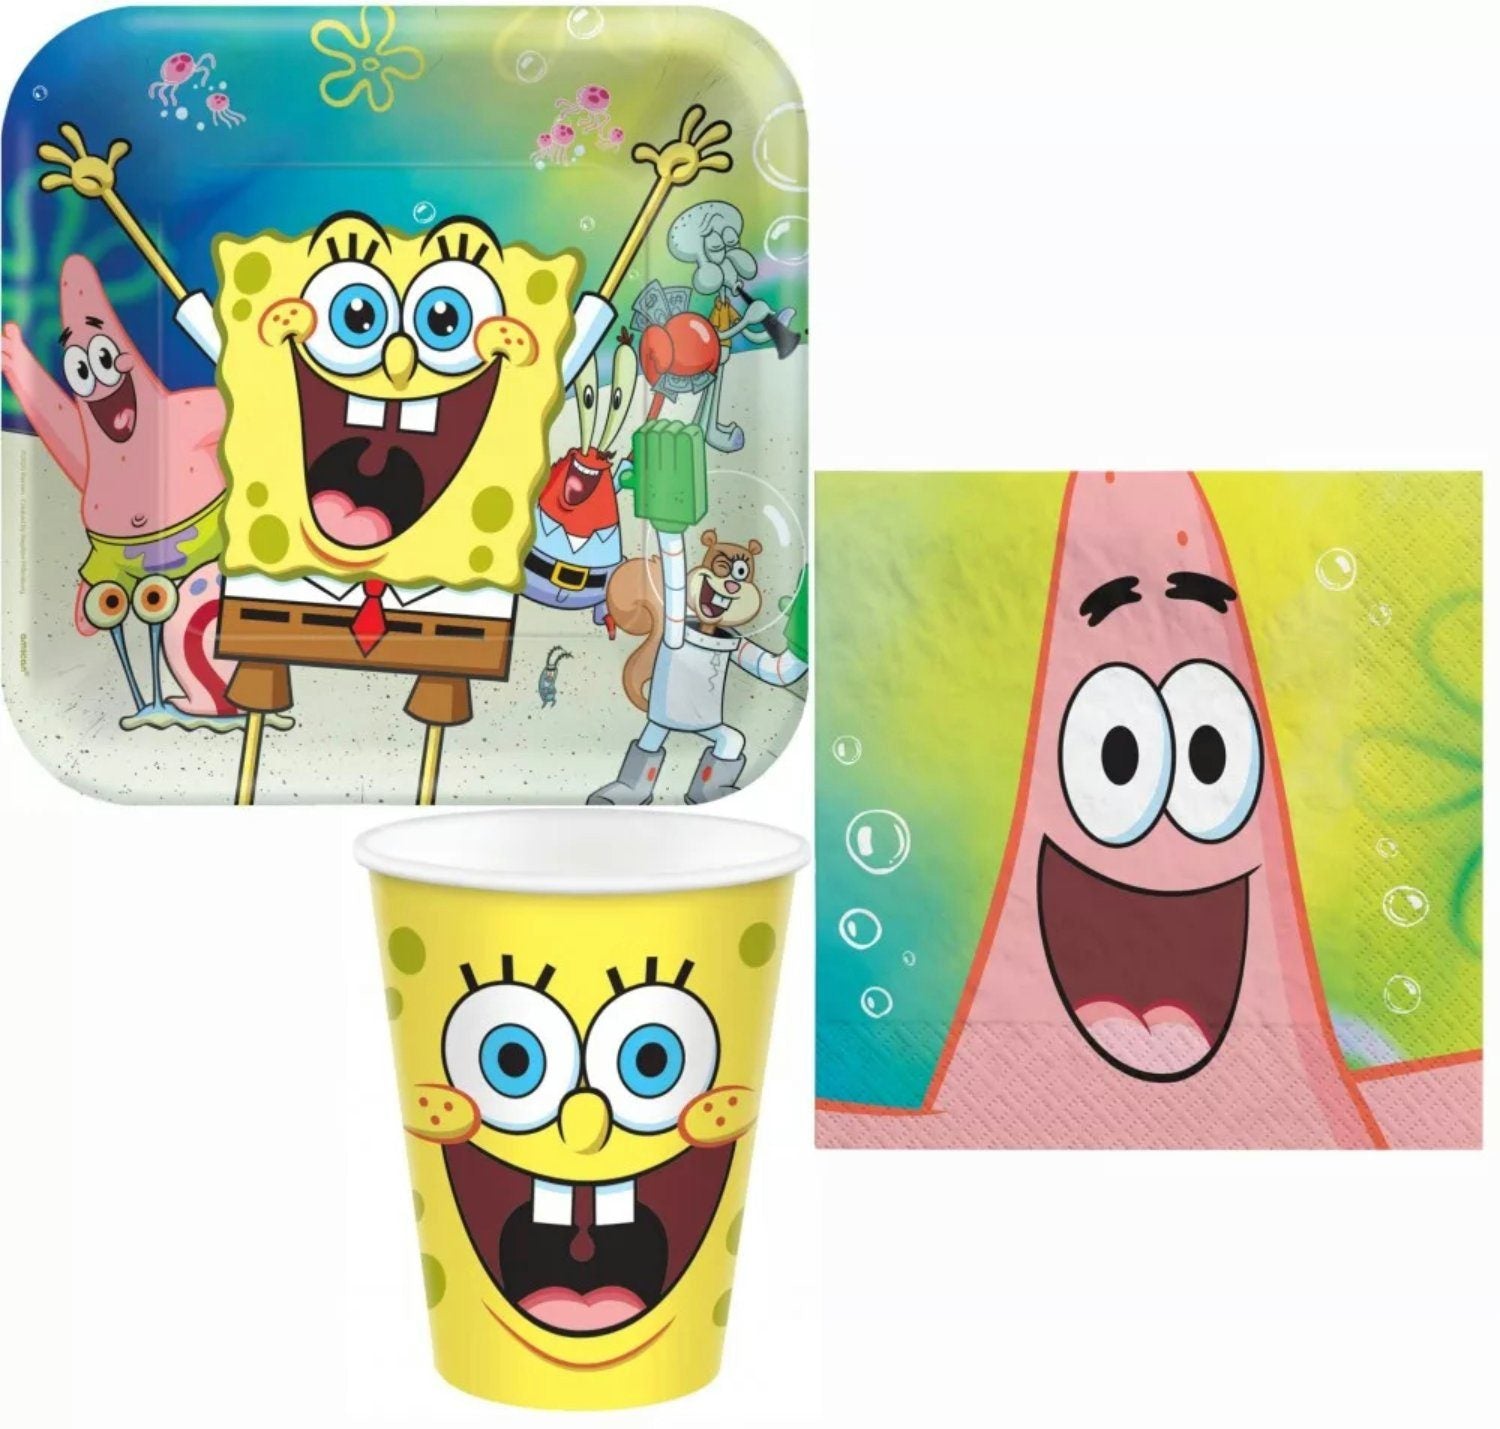 Sorglos Partykarton "Spongebob" 62 Teile - Party im Karton